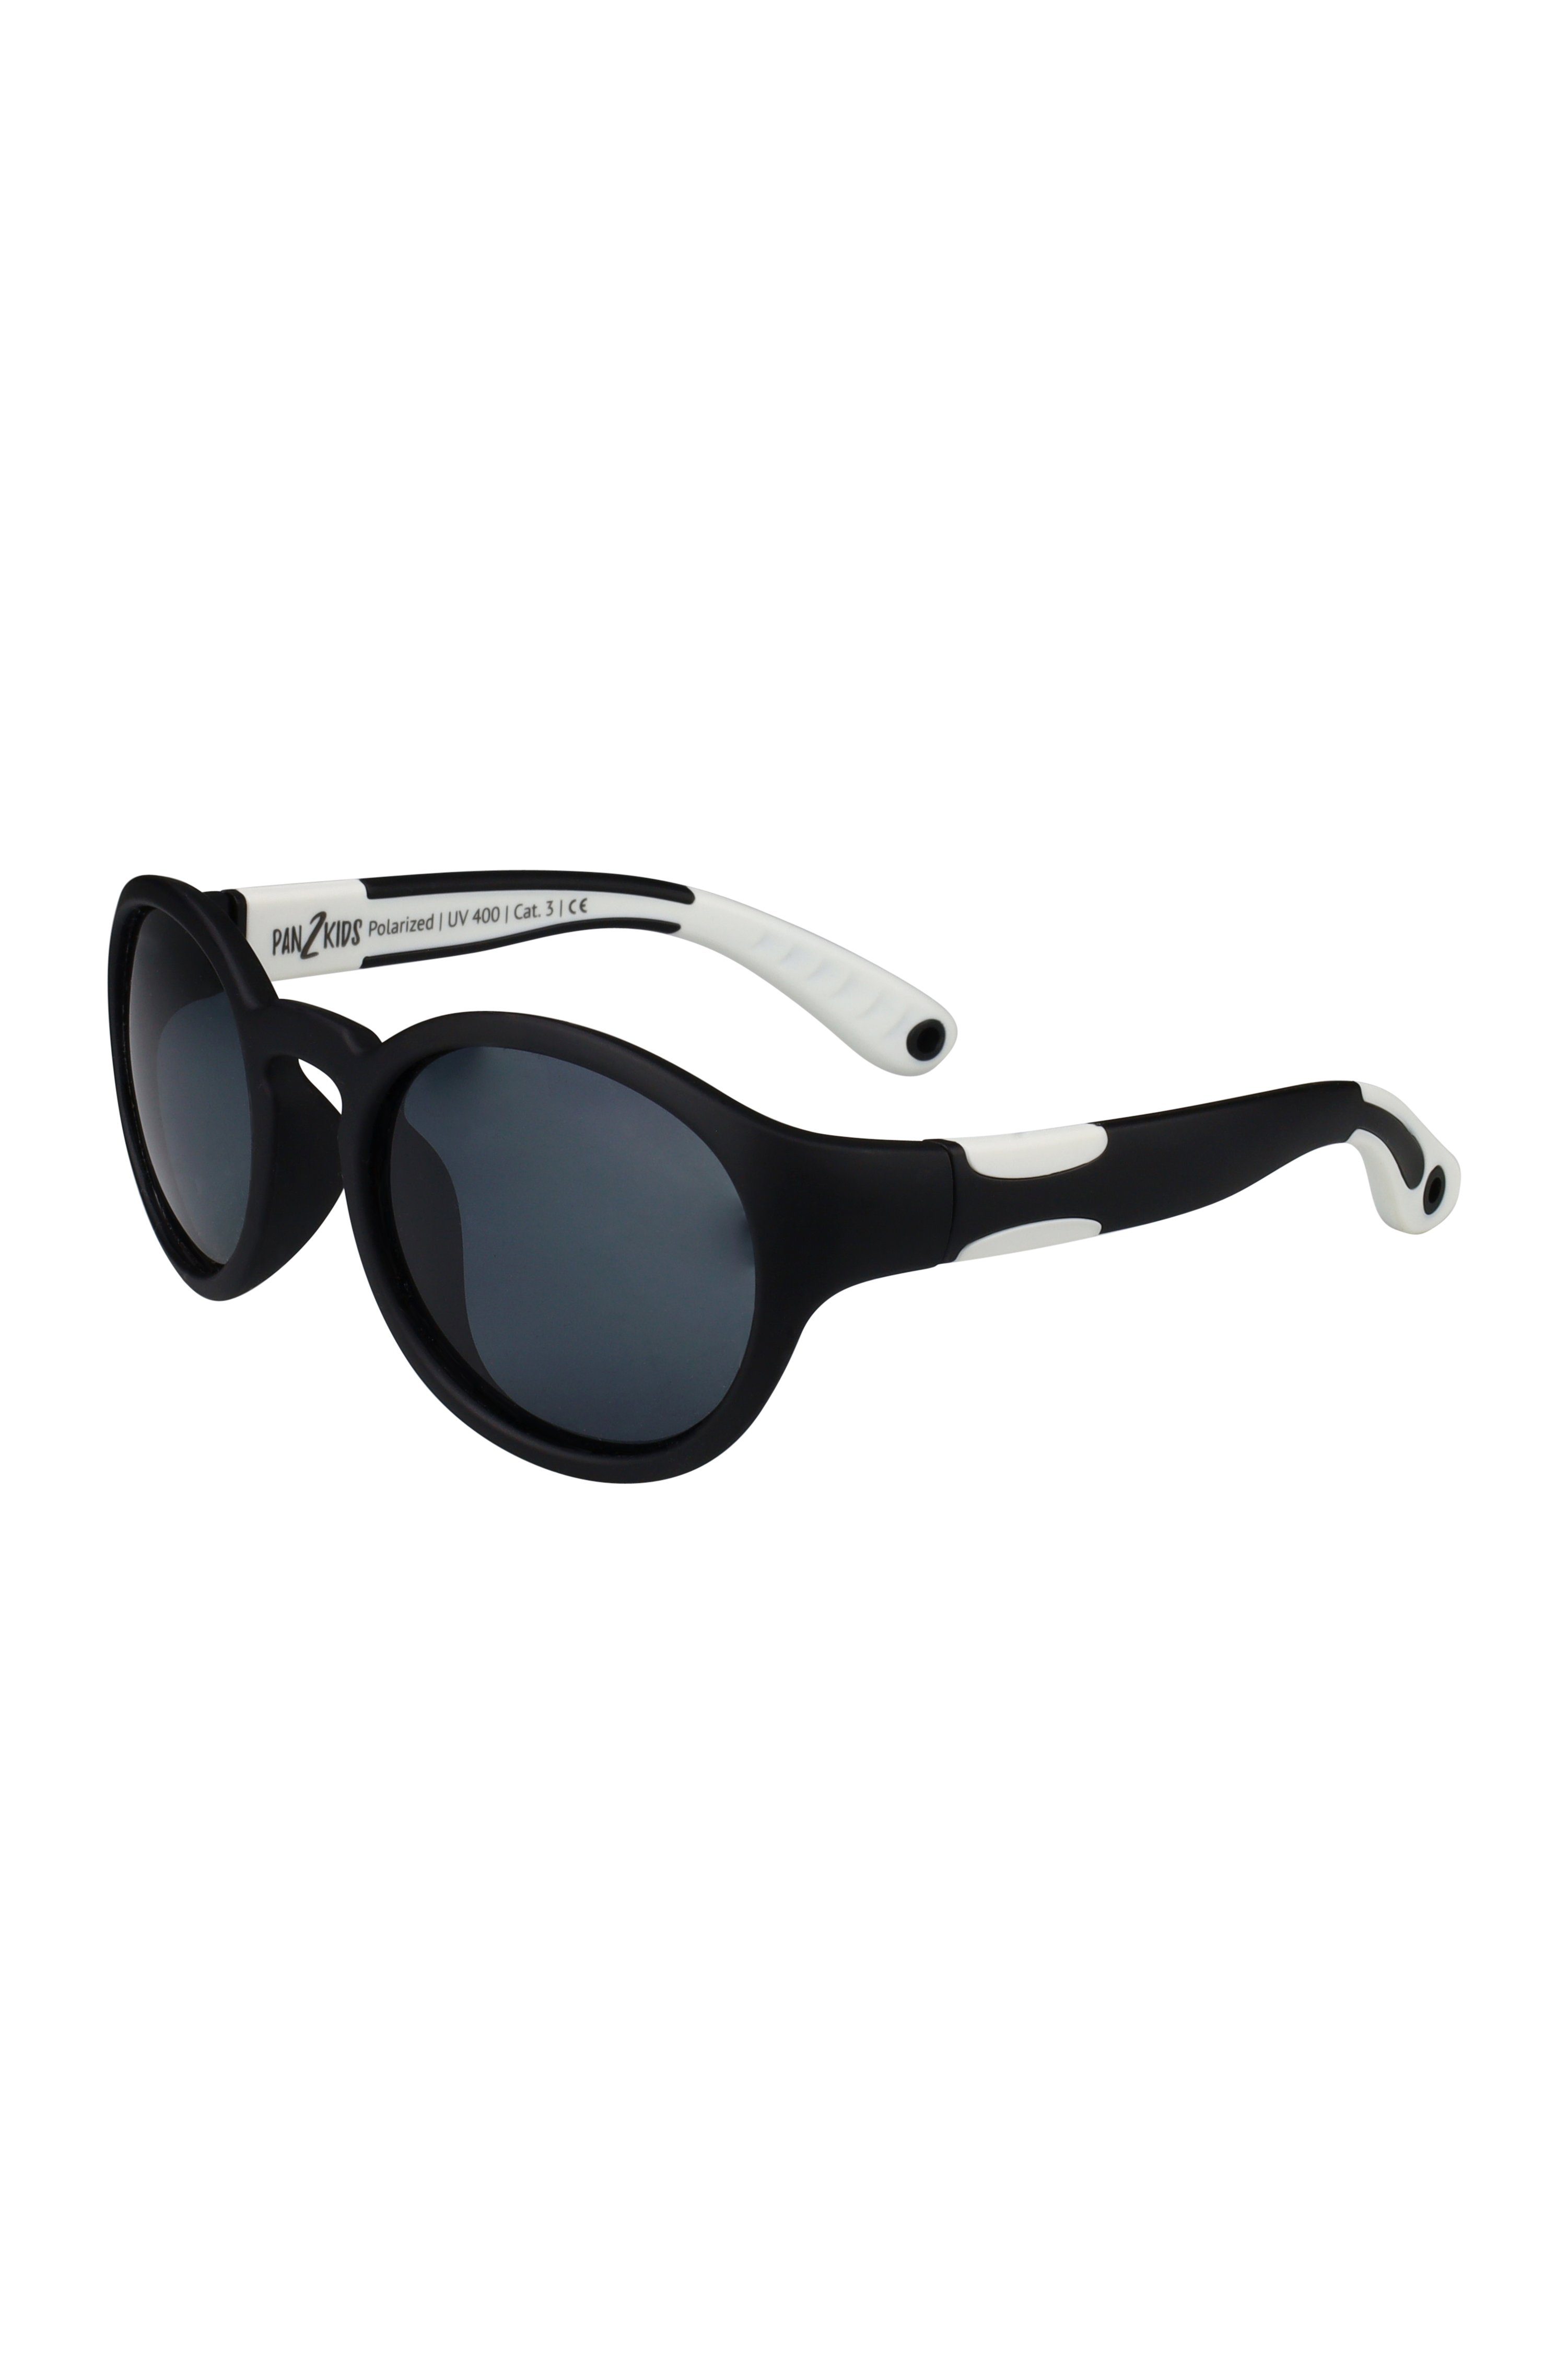 ActiveSol SUNGLASSES Sonnenbrille für Kinder - Pan2Kids, Panto Design, 2 – 5 Jahre, polarisiert Black and White